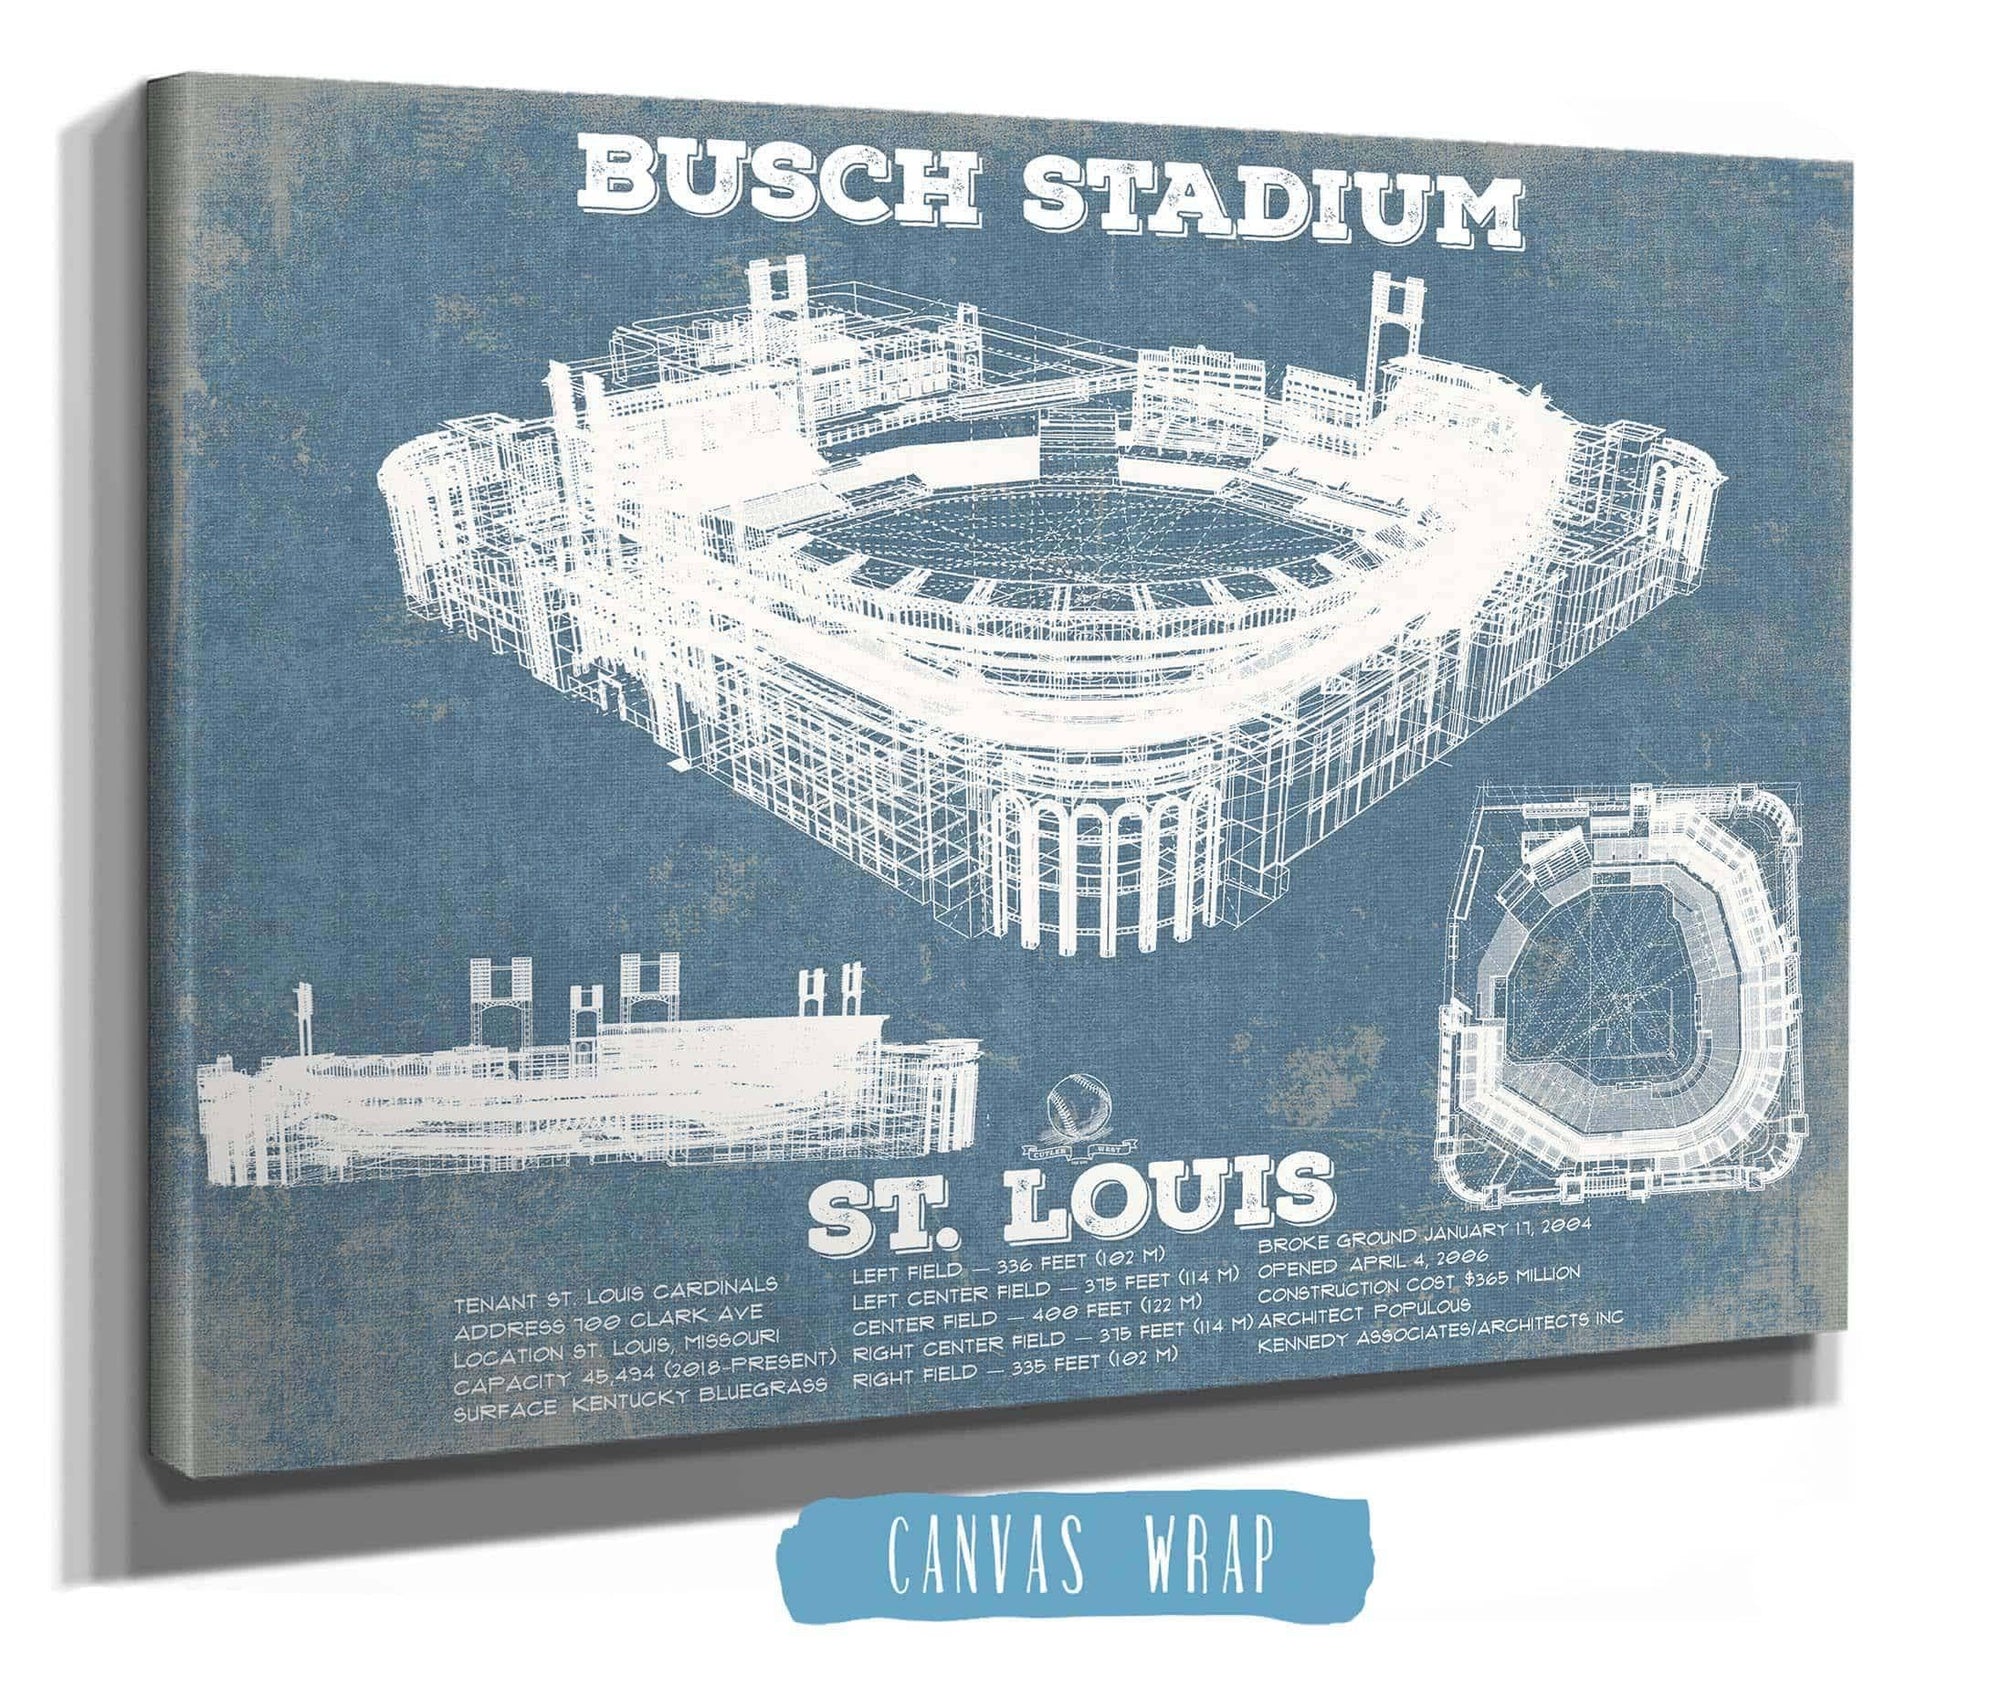 Cutler West Baseball Collection St. Louis Cardinals - Busch Stadium Vintage Baseball Print